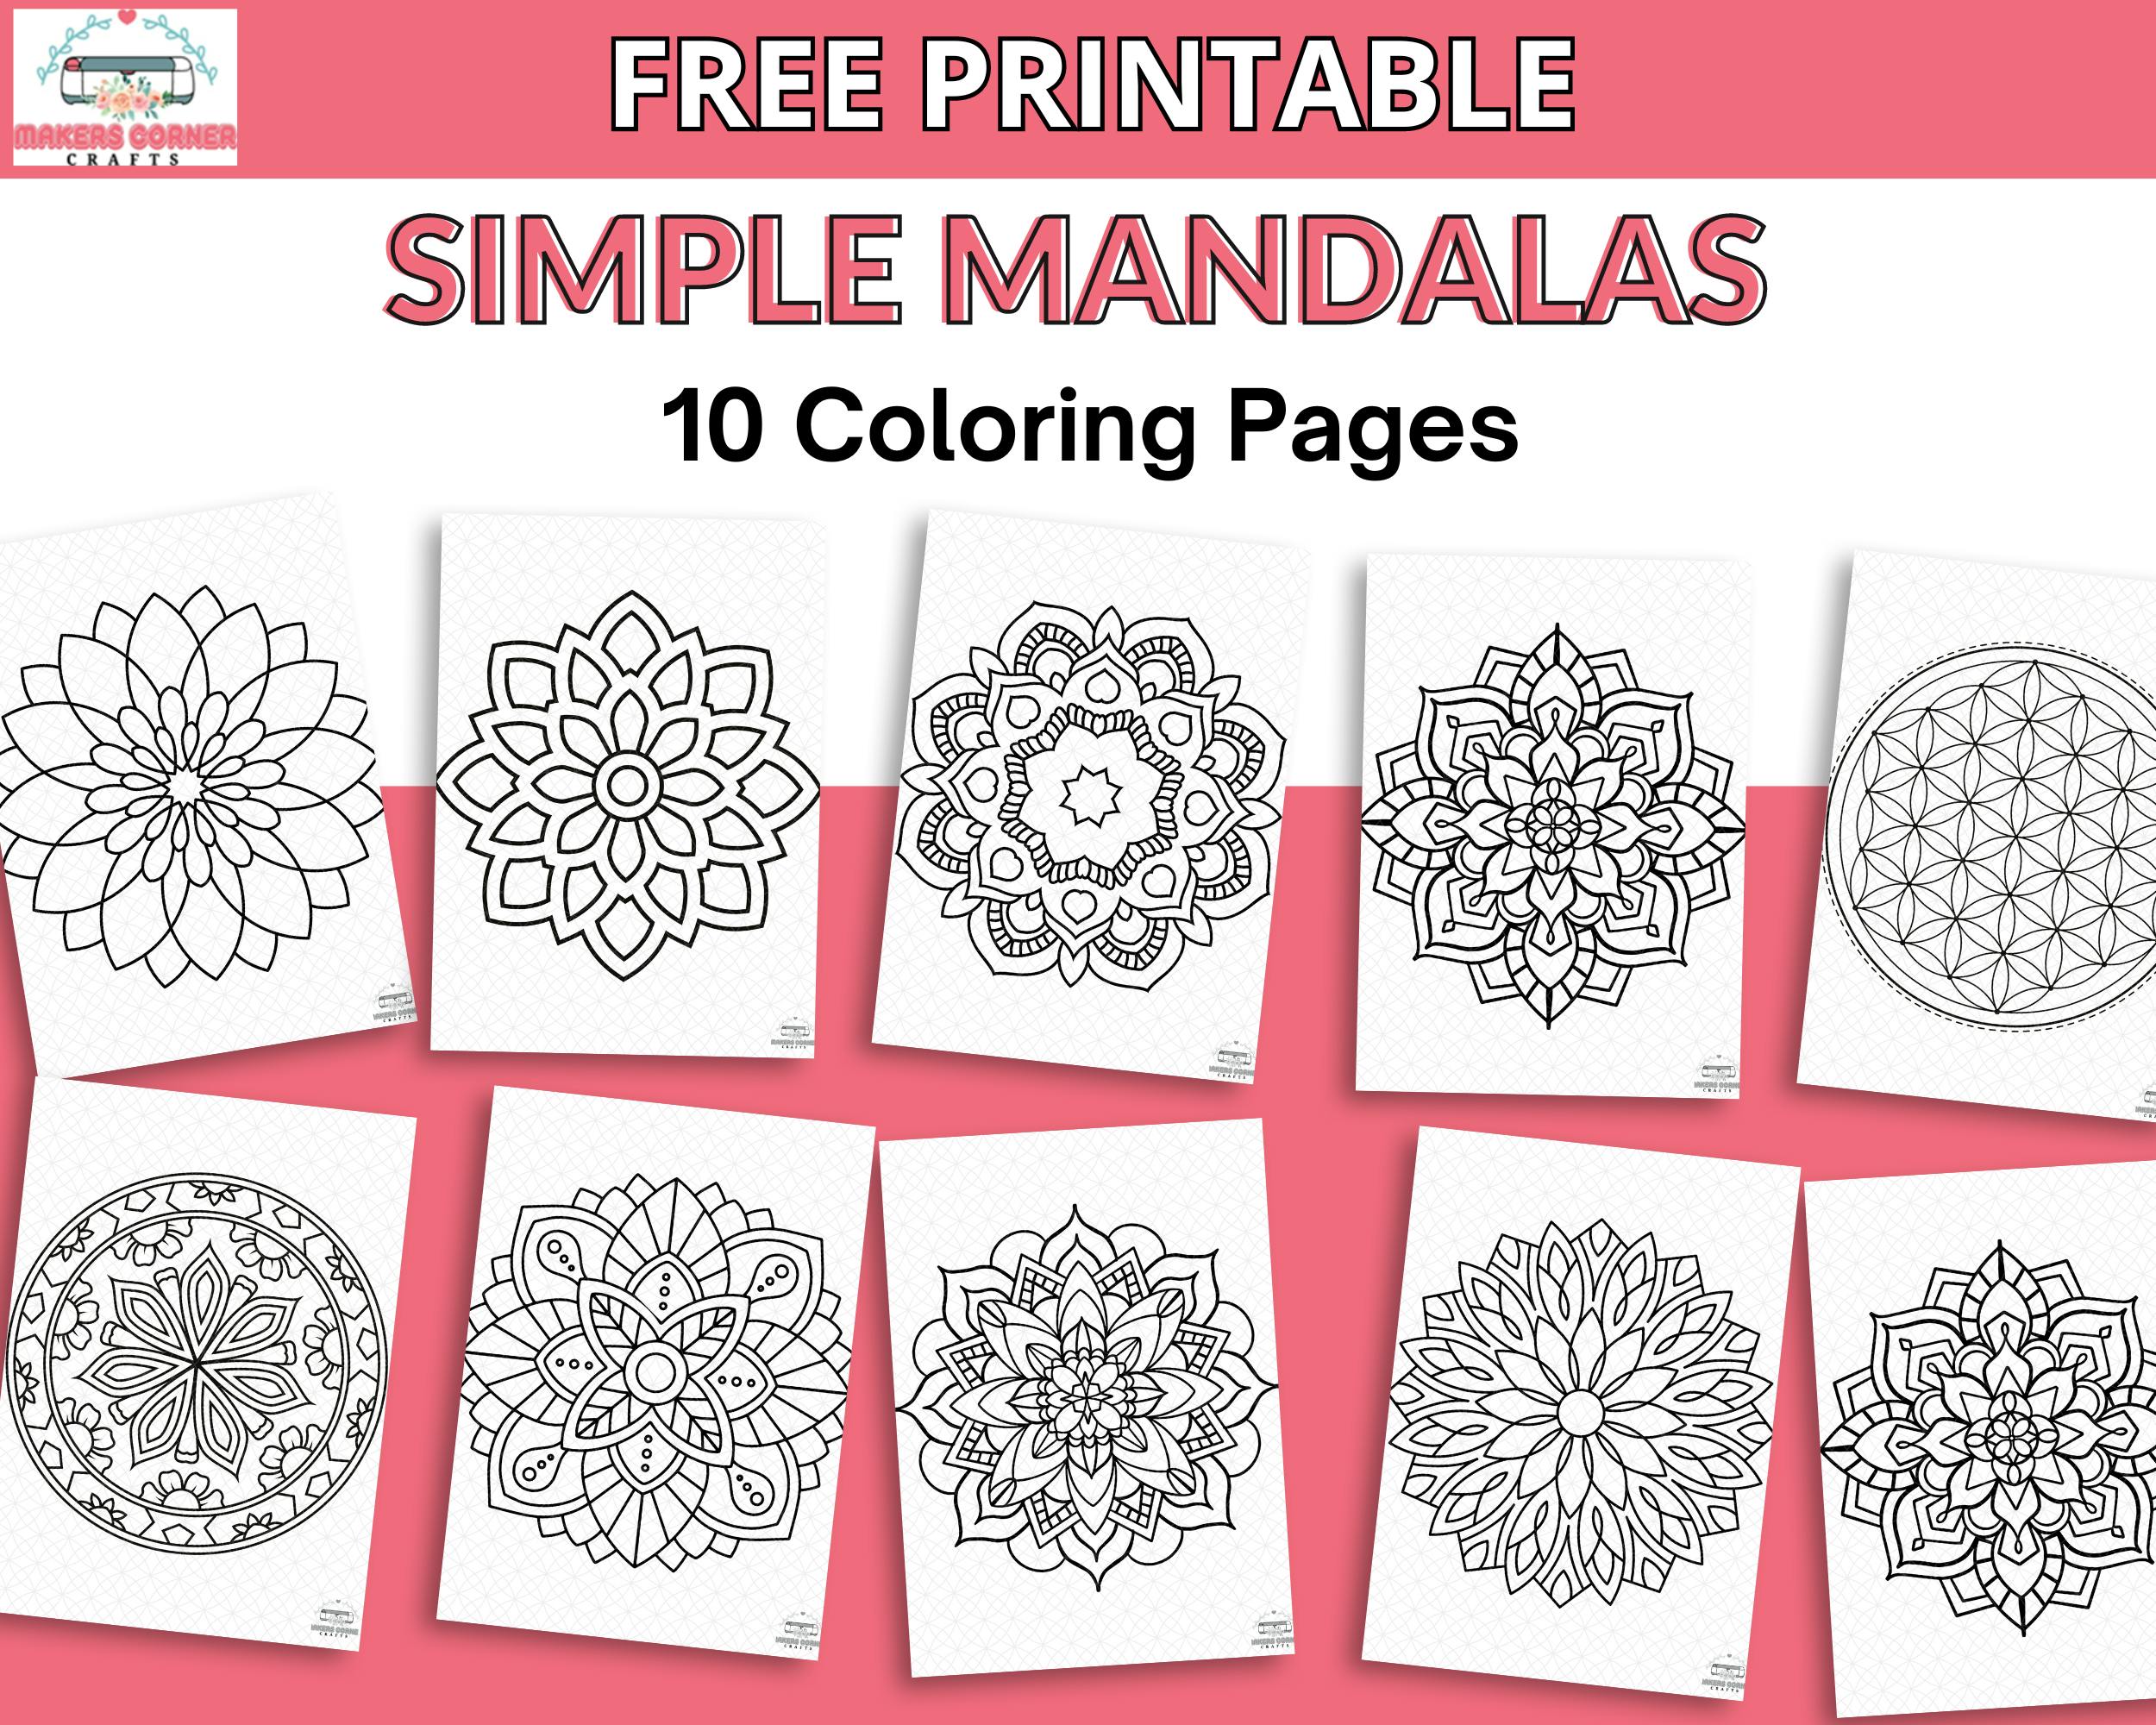 Mandala Coloring Pages